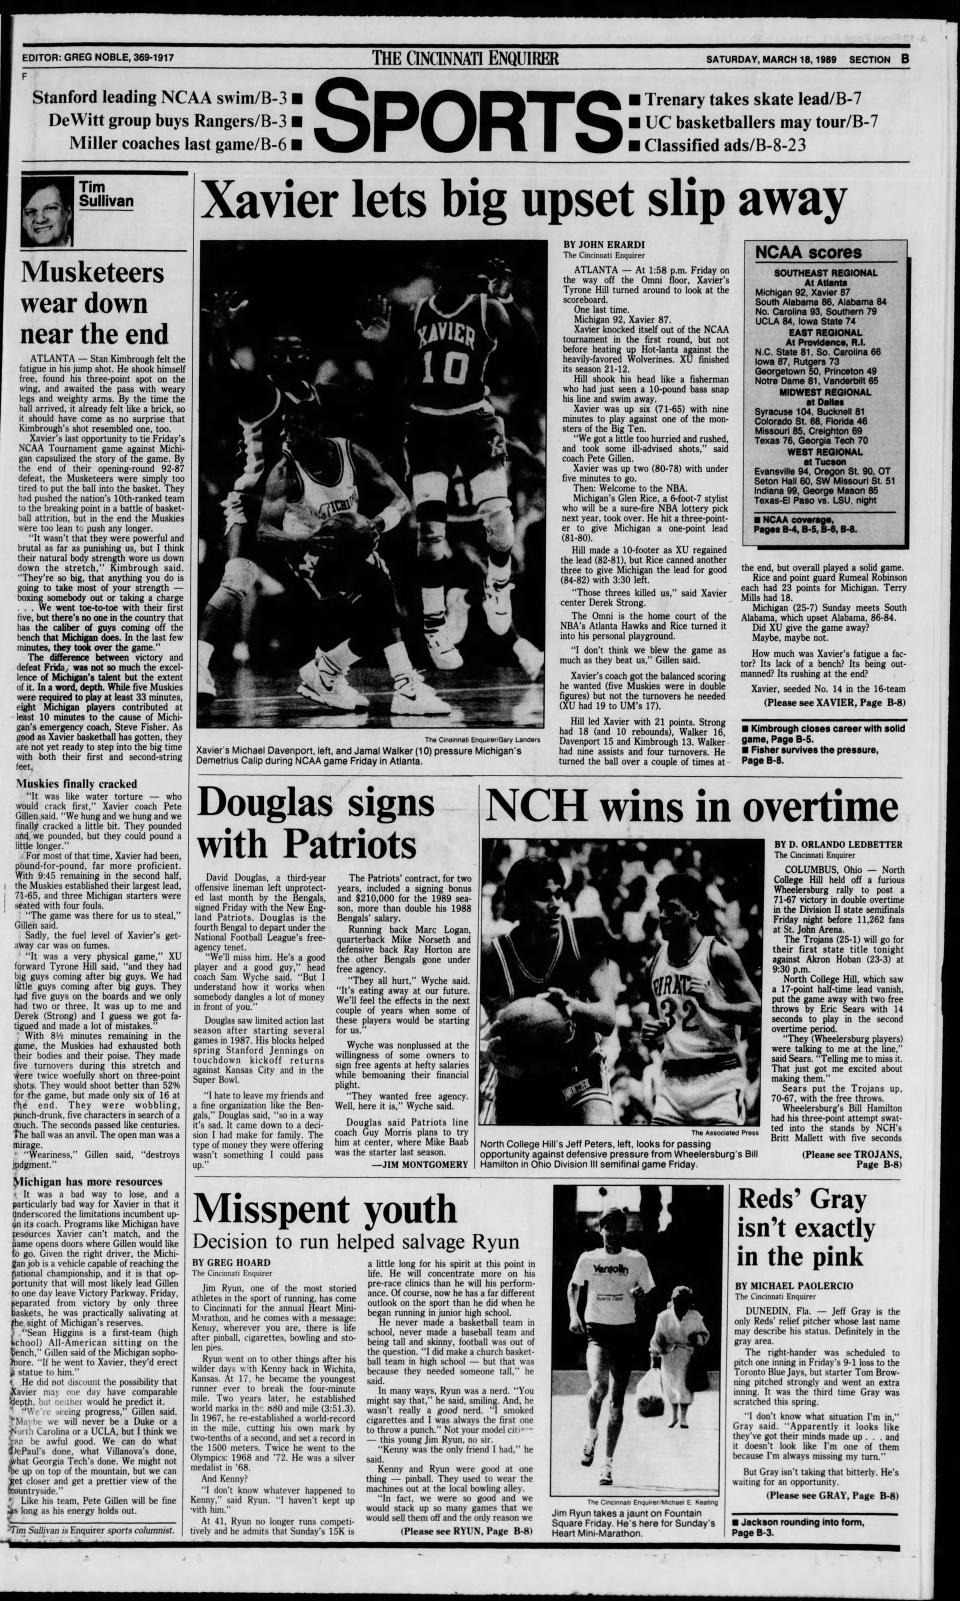 March 18, 1989 Cincinnati Enquirer sports cover